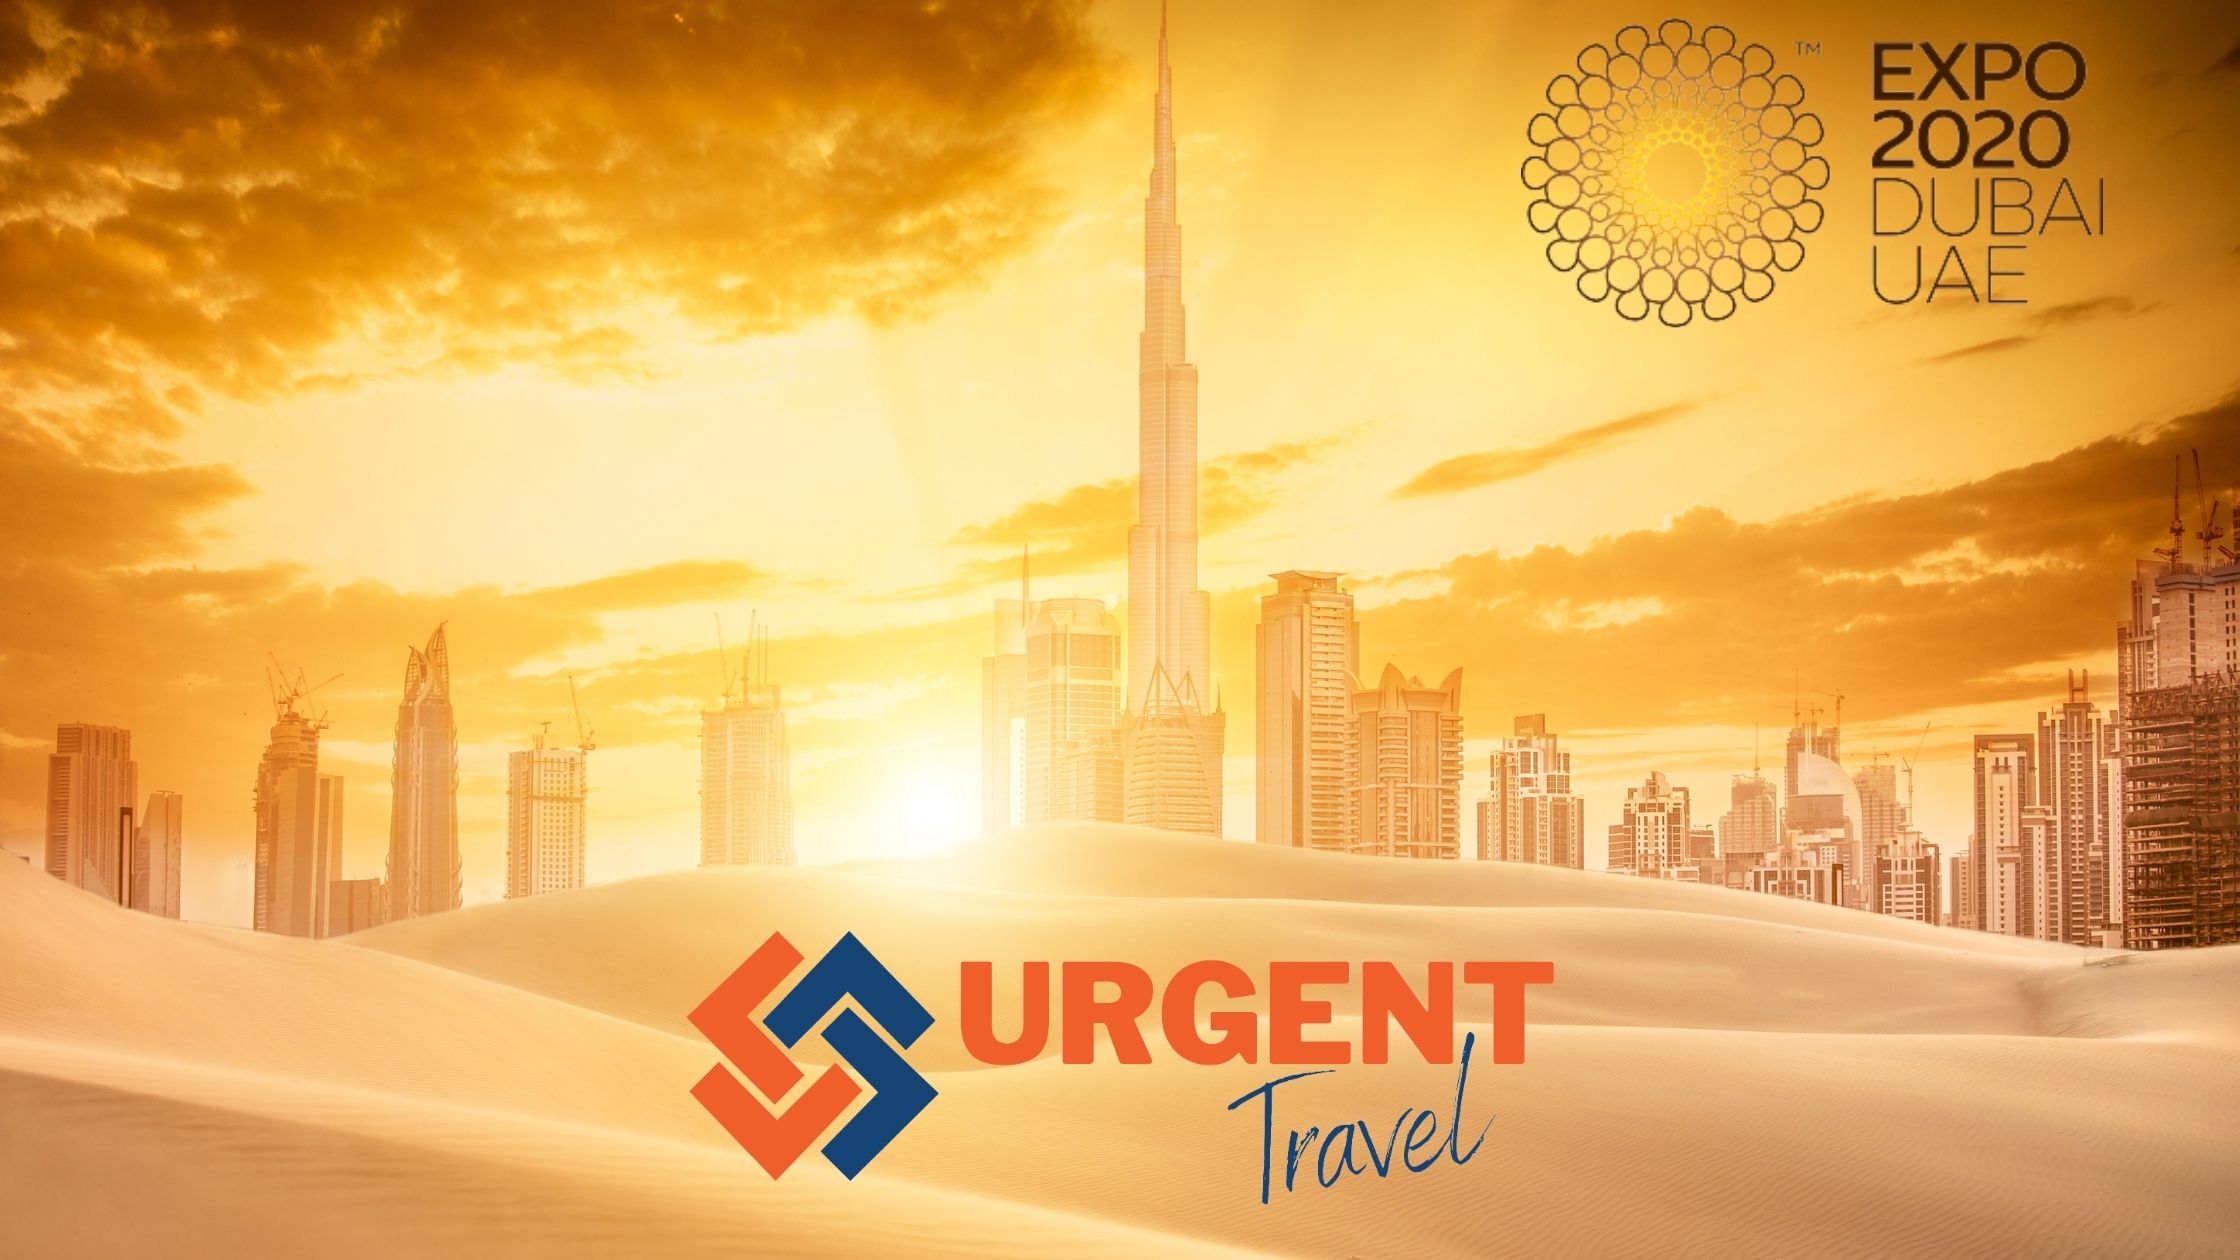 Expo 2020 Urgent Travel Dubai 2